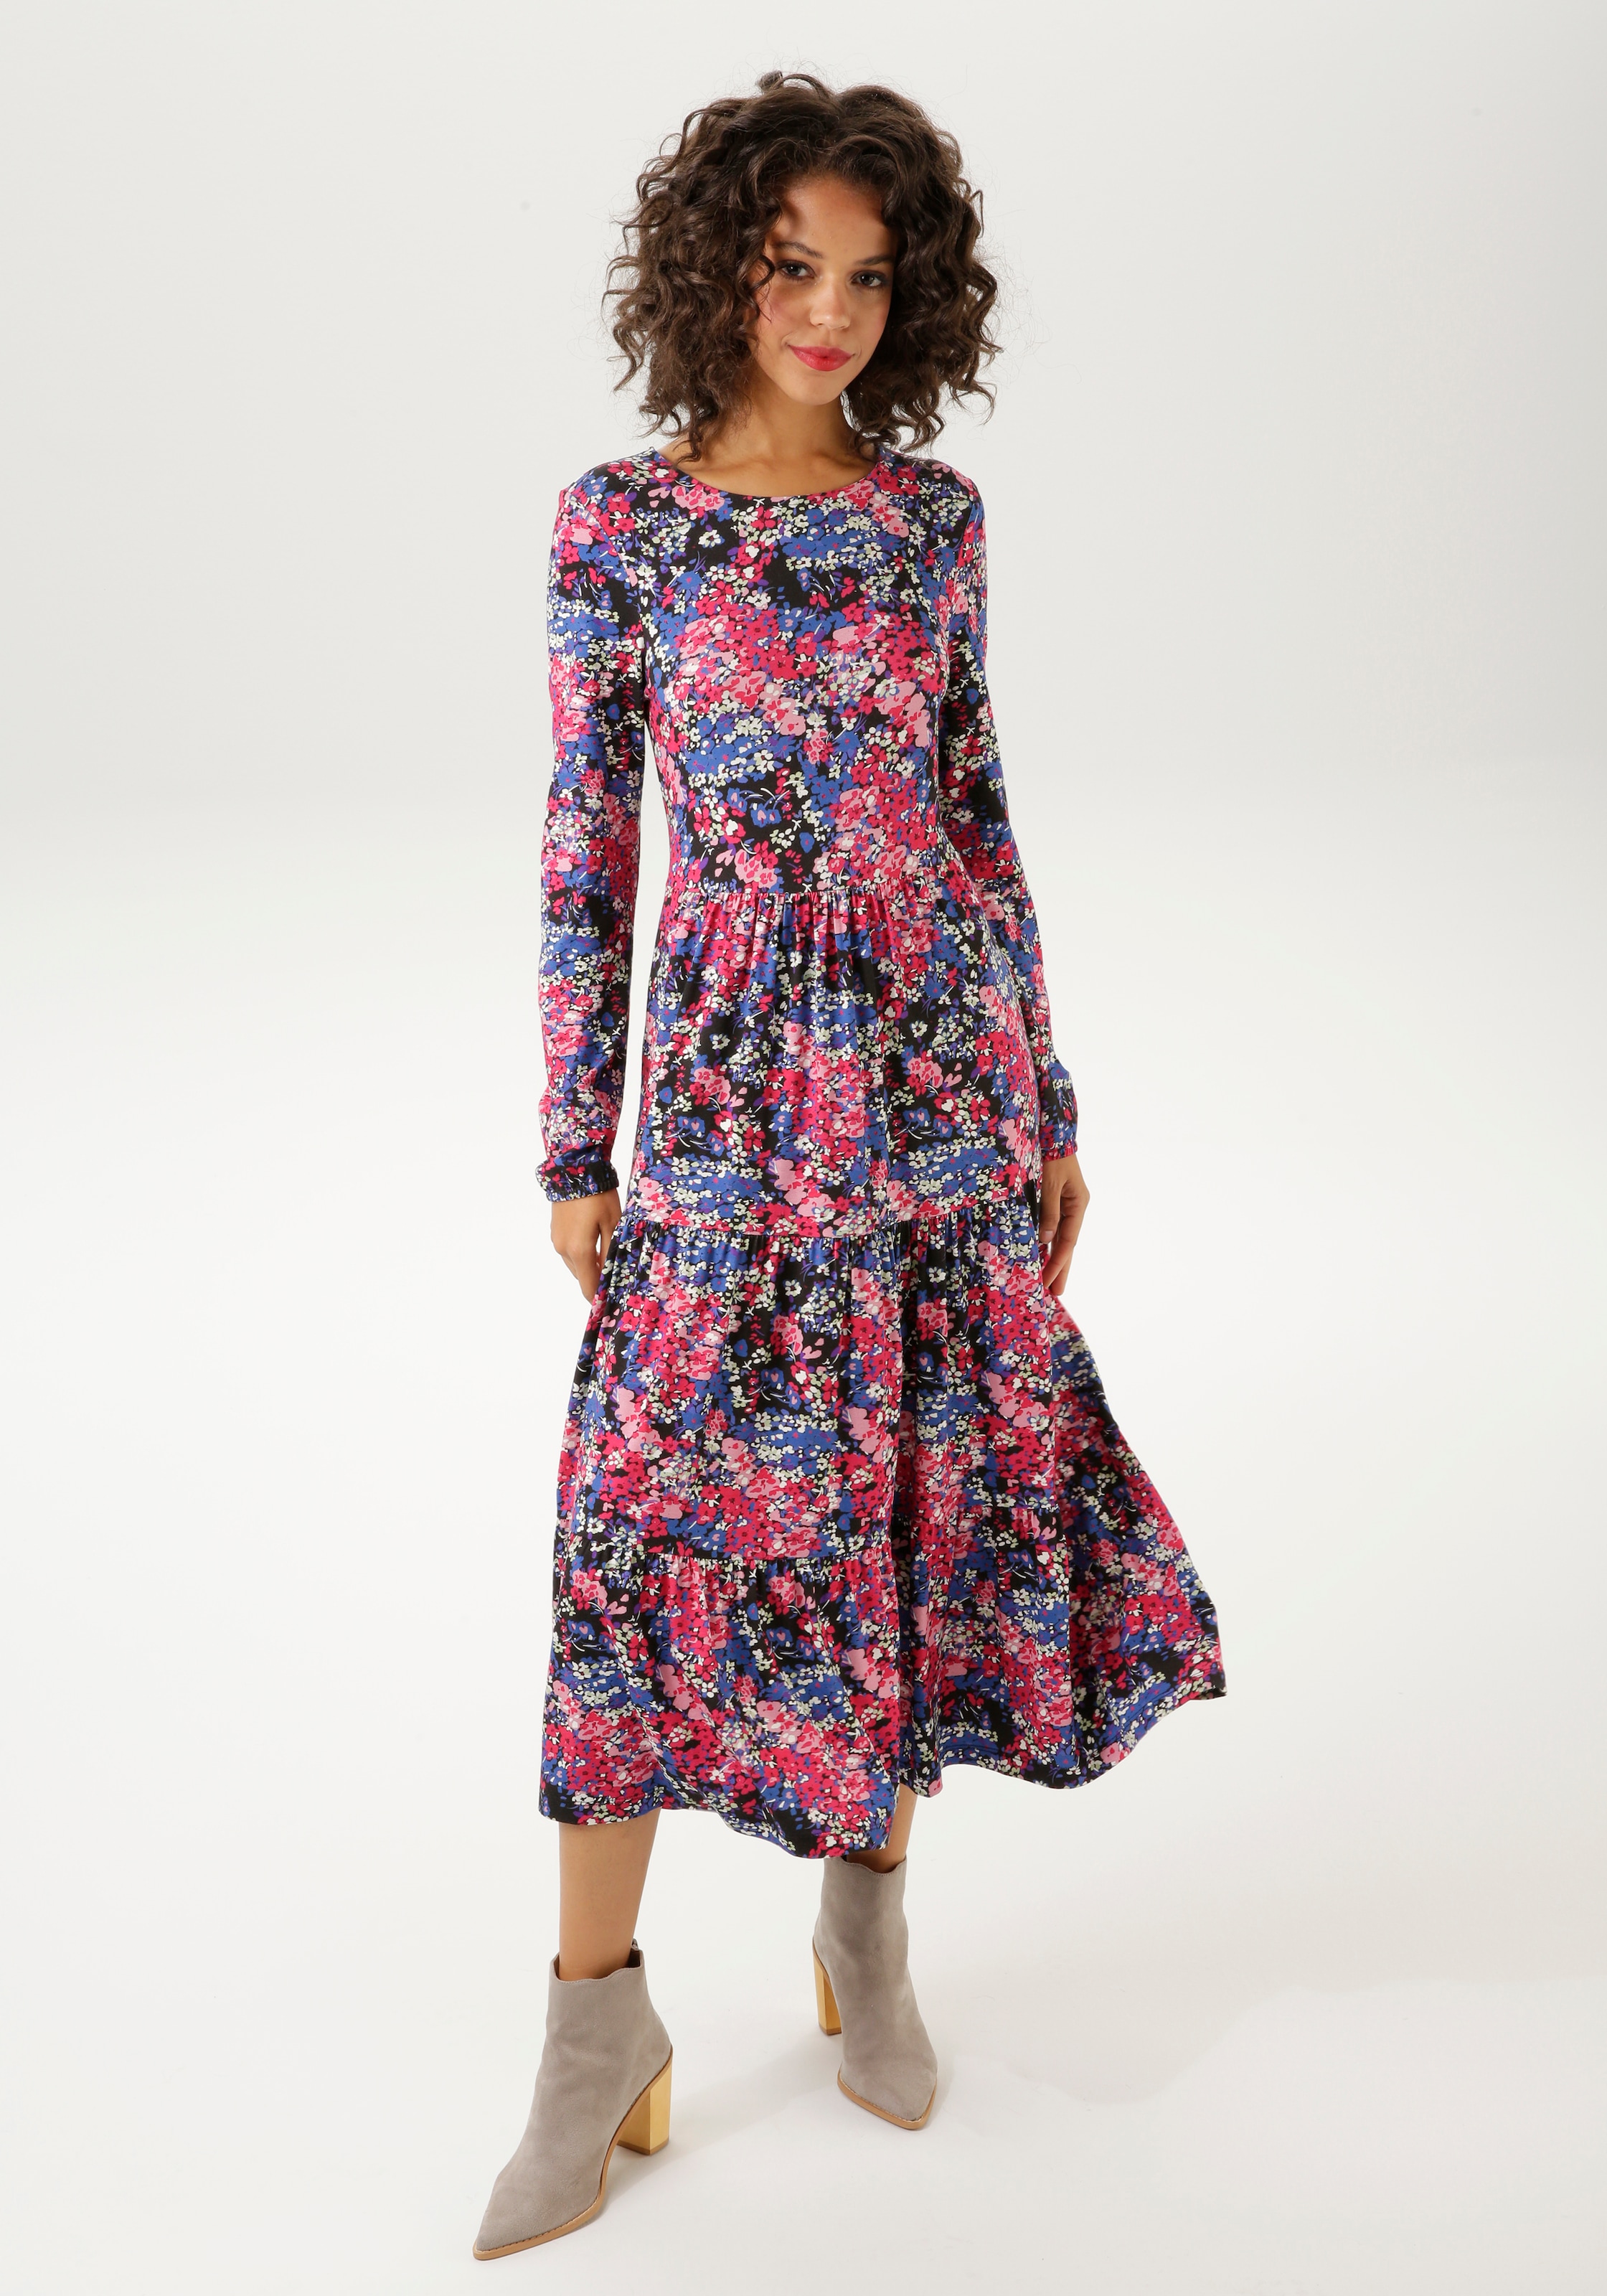 Jerseykleid, mit abstraktem Blumendruck - jedes Teil ein Unikat - NEUE KOLLEKTION